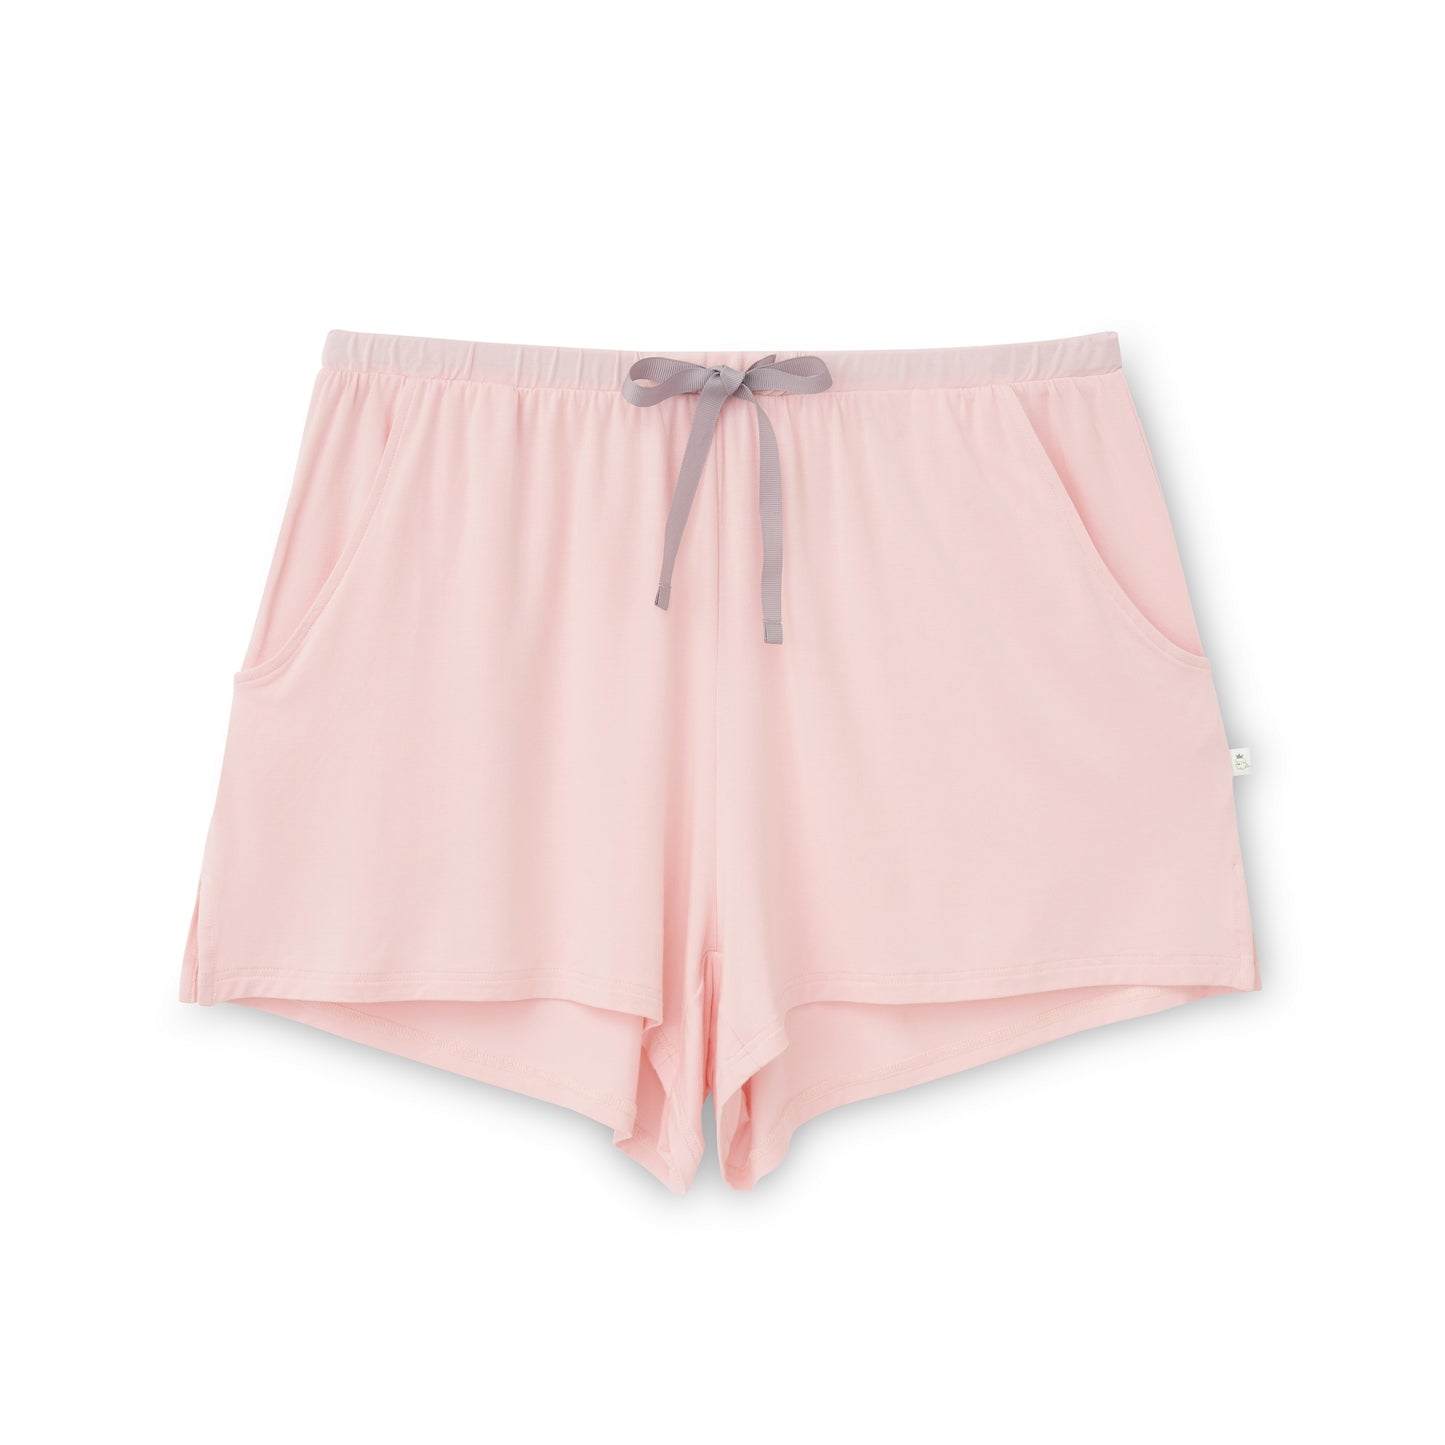 Ladies' Basic Bamboo Shorts - Pink